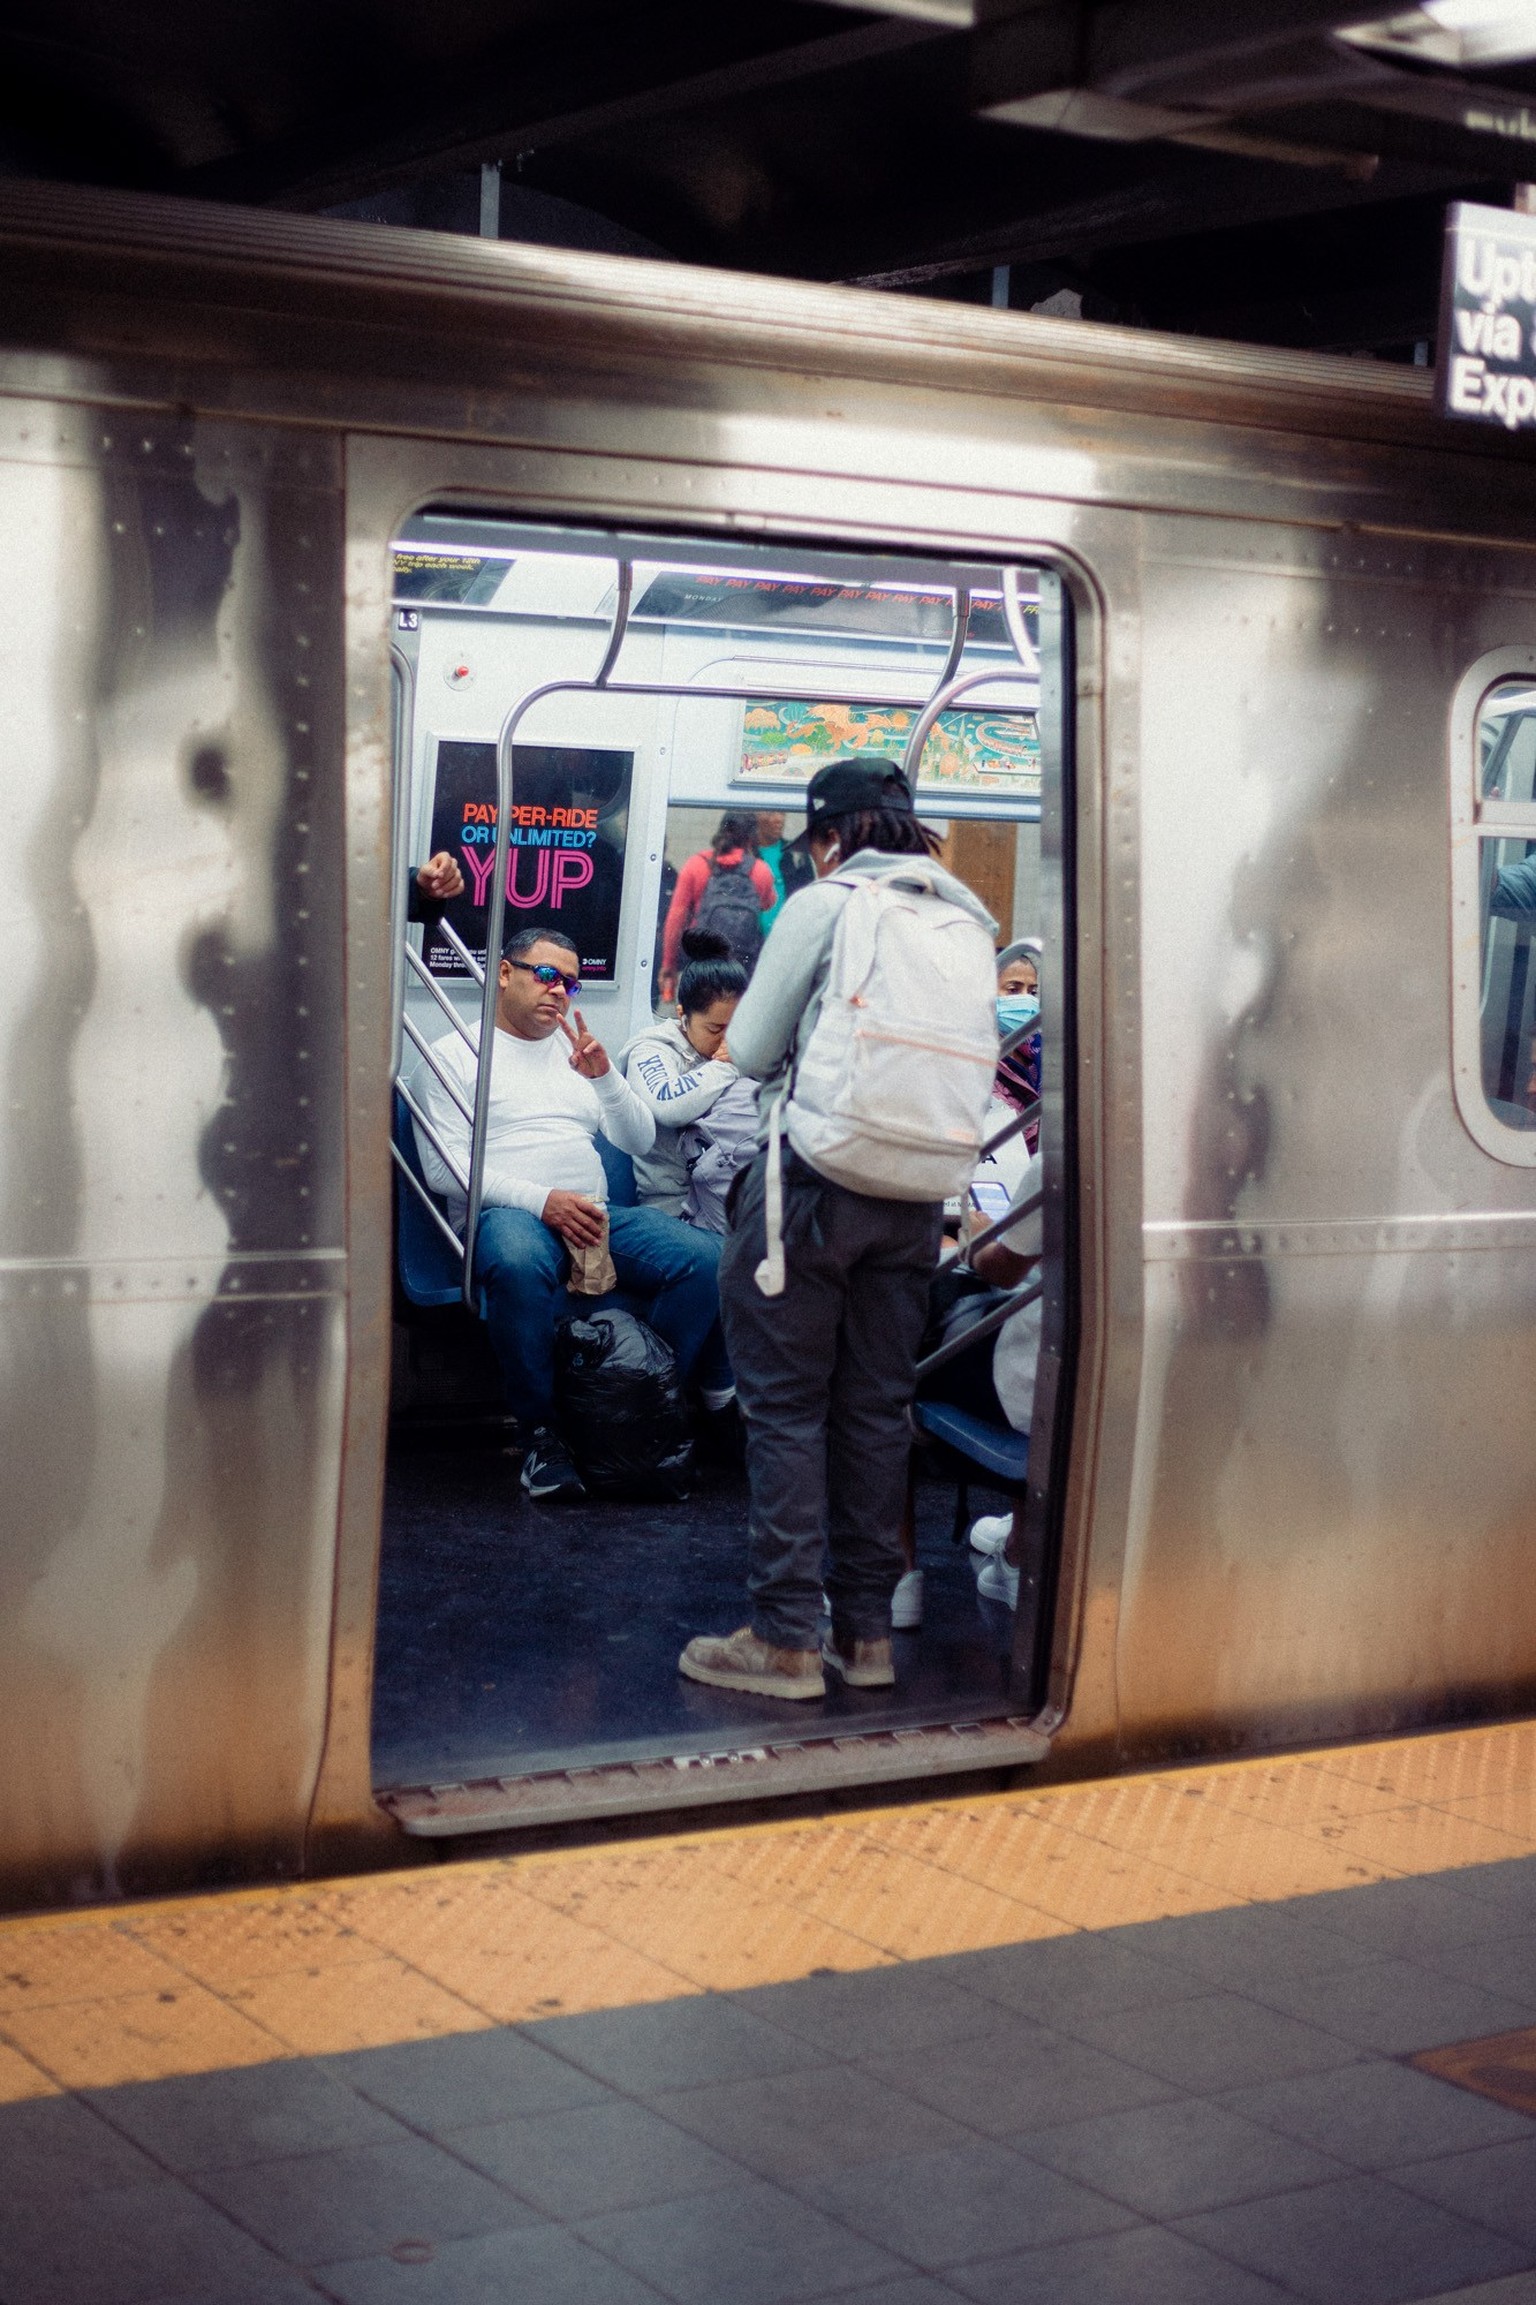 People of New York | Strassenportraits von Menschen in New York, November 2022